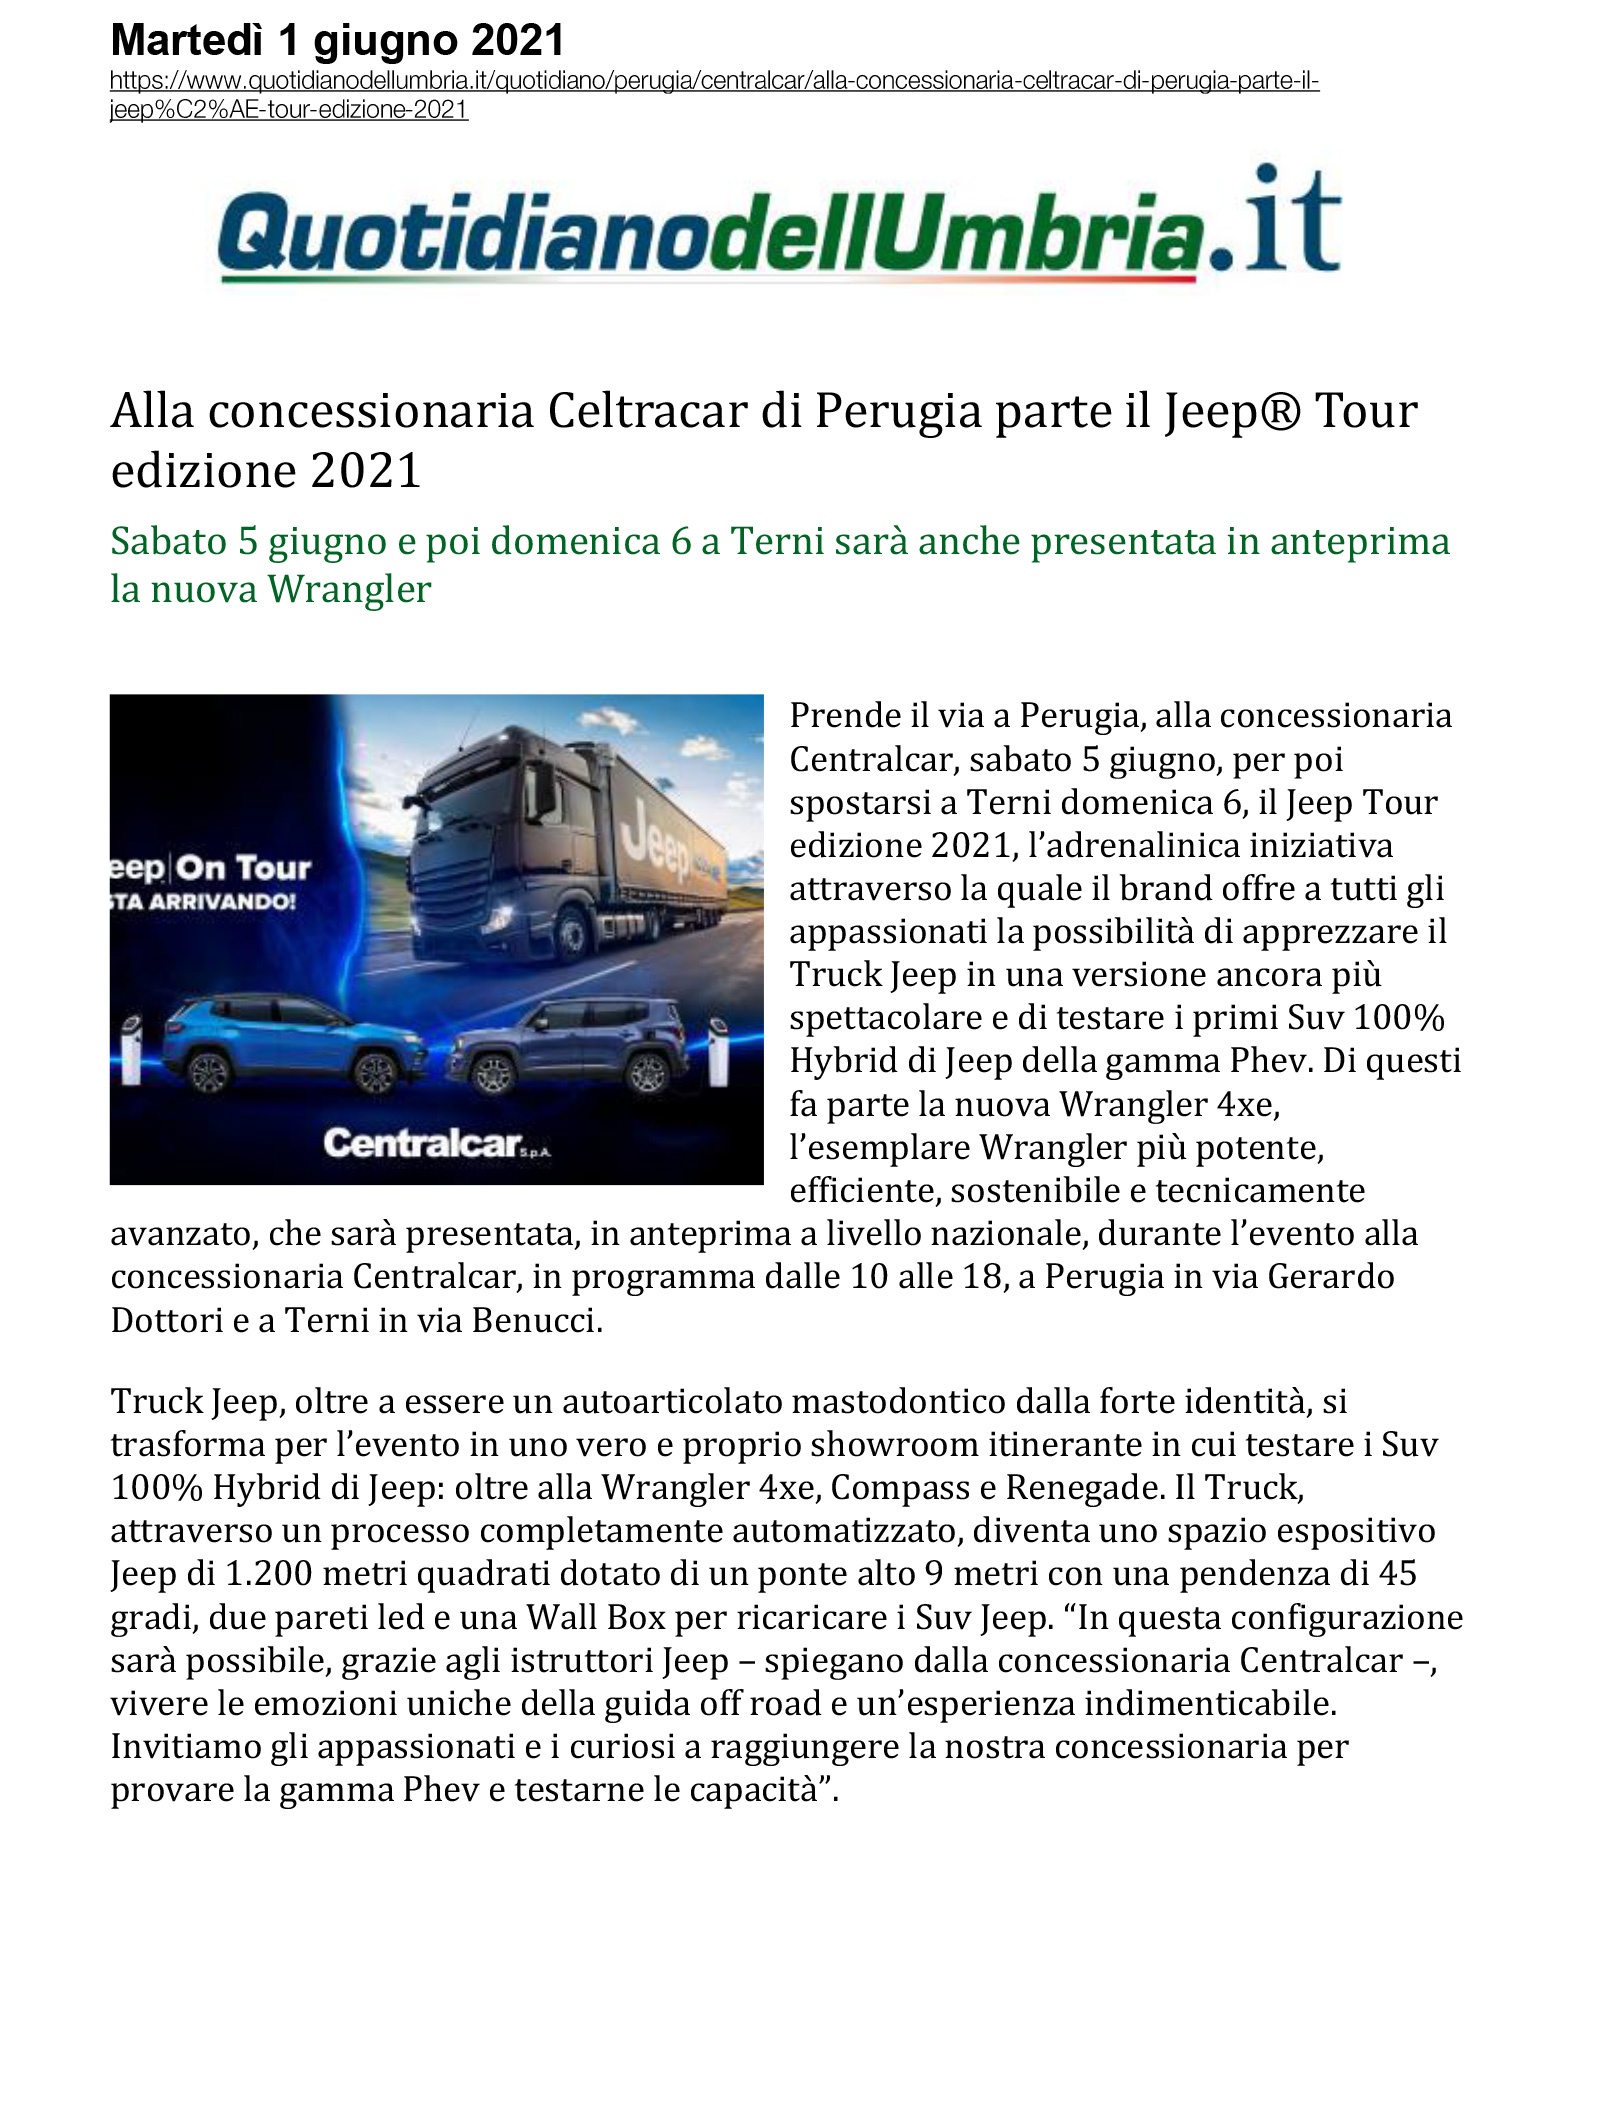 Alla concessionaria Celtracar di Perugia parte il Jeep Tour  edizione 2021